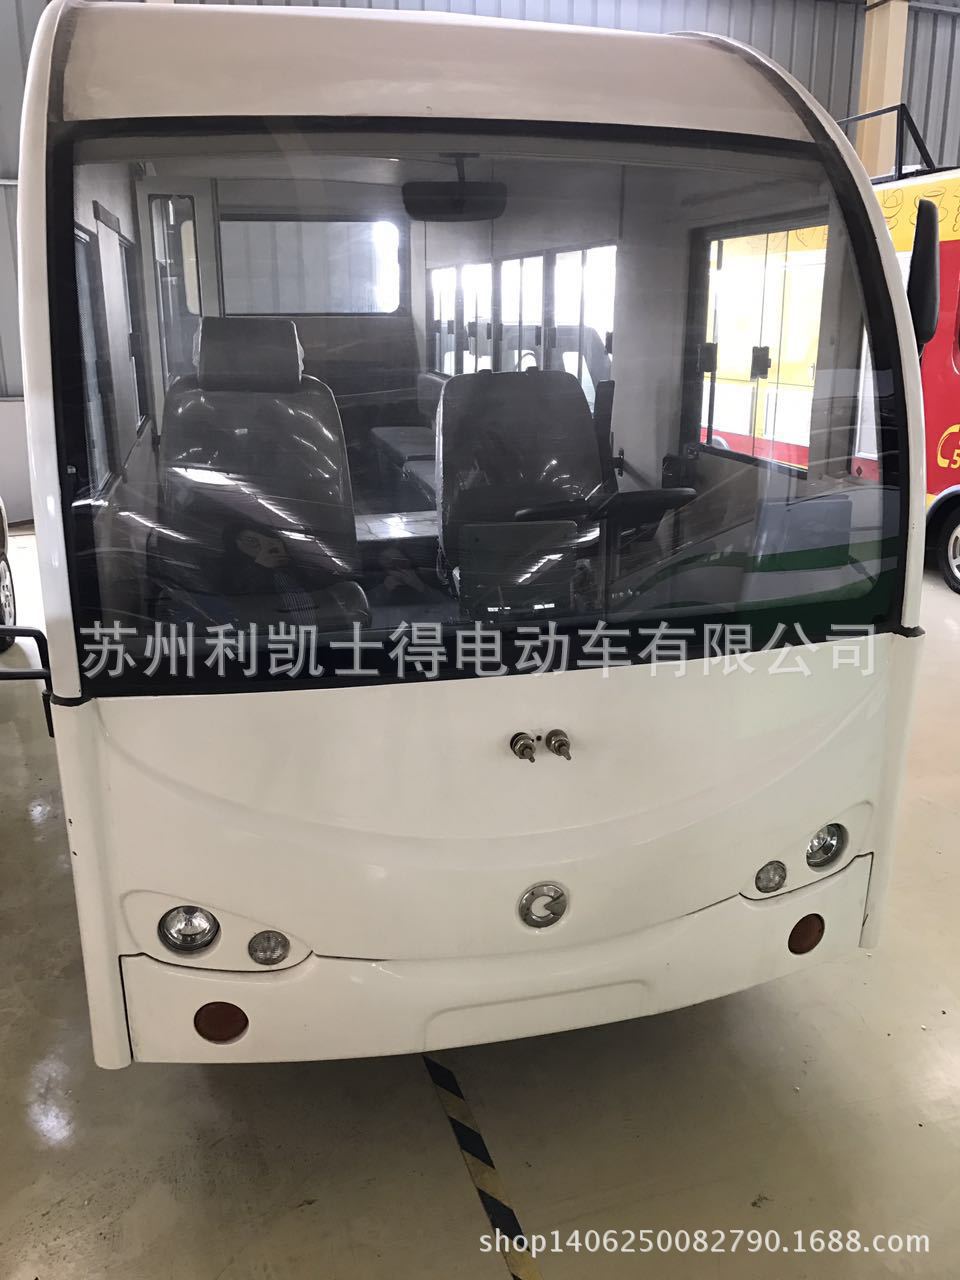 厂家供应全封闭20座电动观光车 上海地区看房接待车 可加风扇示例图14